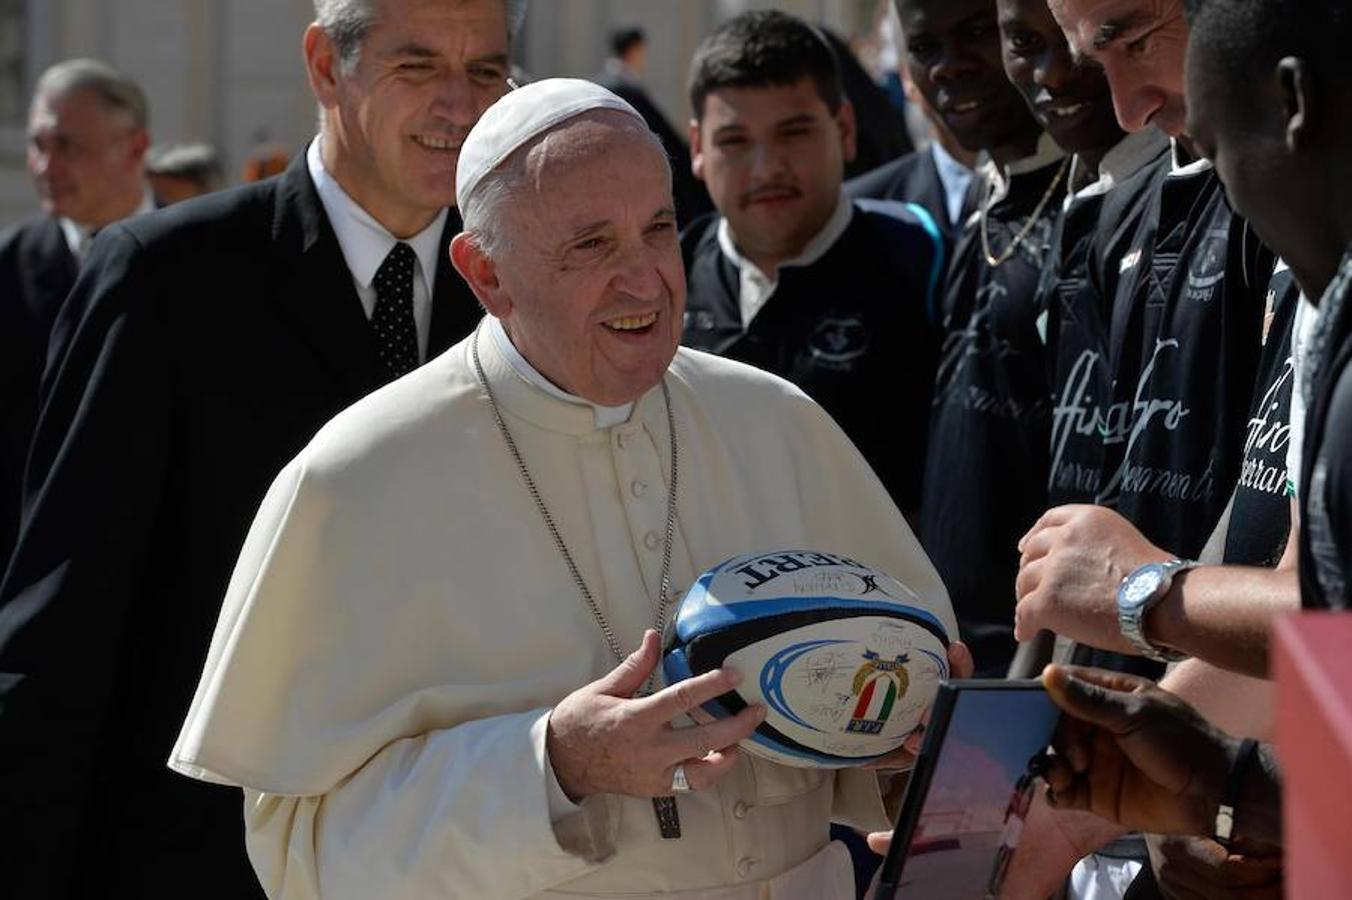 El papa Francisco recibe una pelota de rugby firmada por los miembros de un equipo formado por refugiados tras su audiencia general en la Plaza de San Pedro del Vaticano